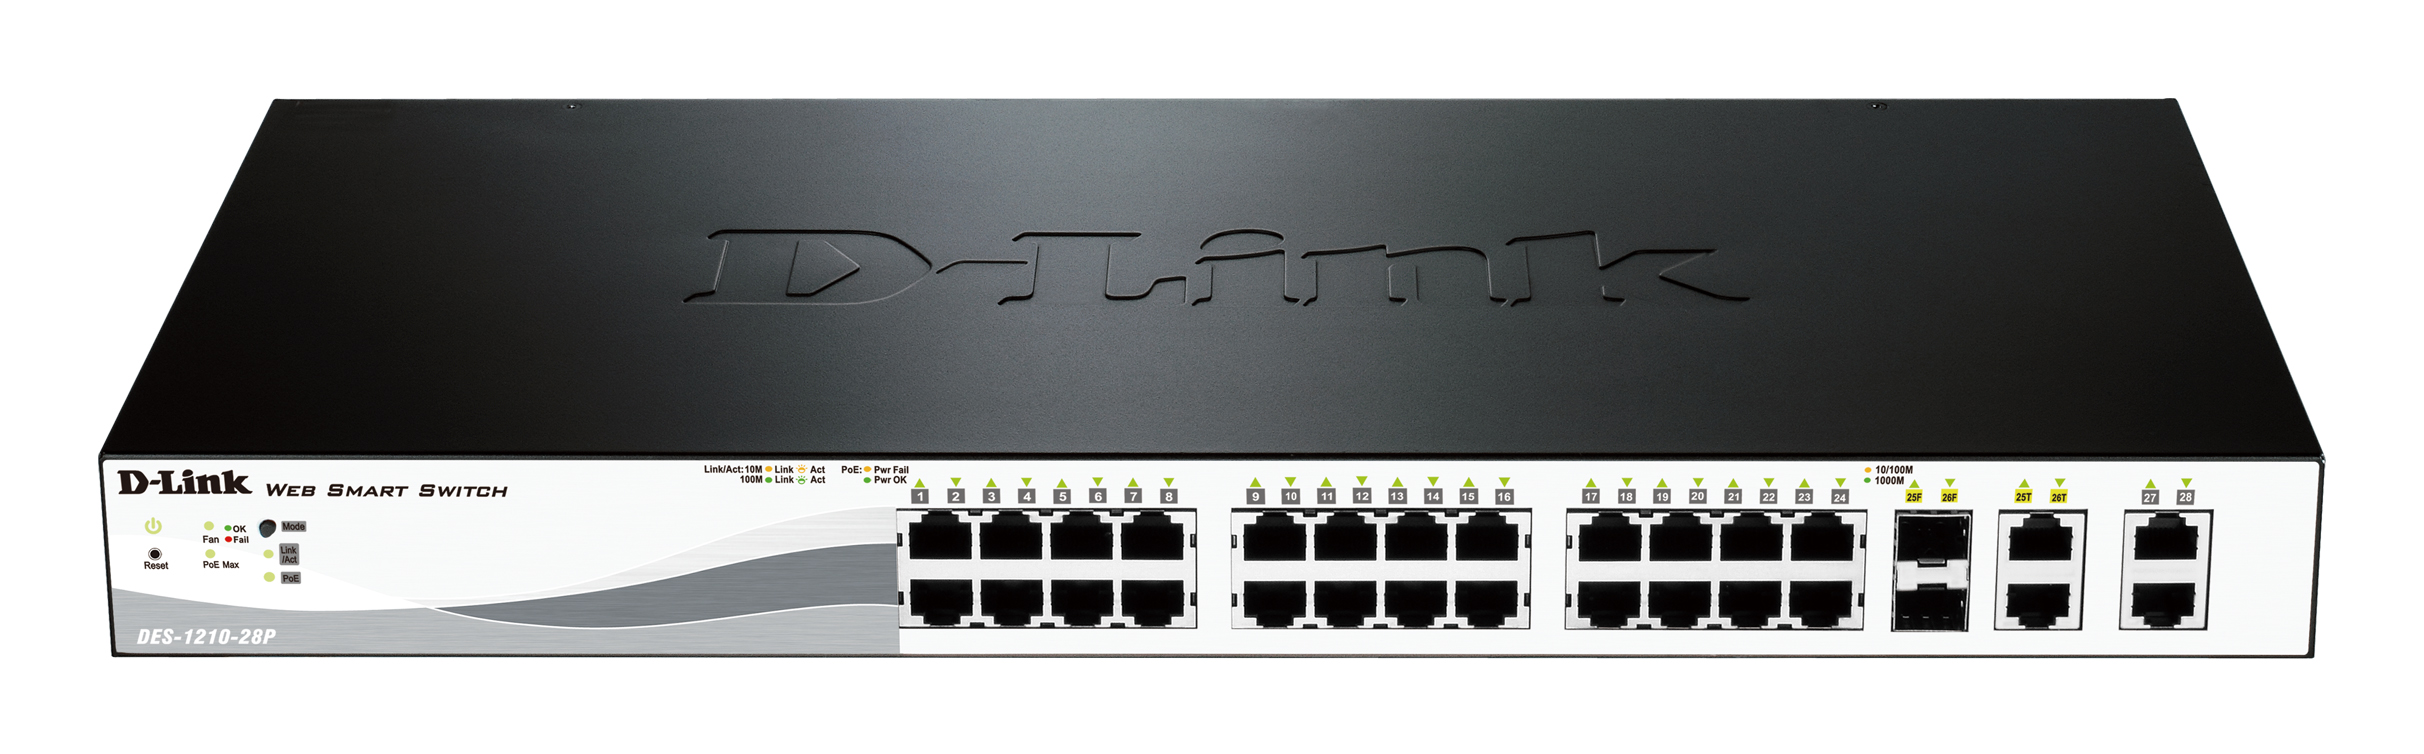 D-Link 24-Port Fast Ethernet PoE Smart Managed Switch with 4 Gigabit Ethernet Ports DES-1210-28P